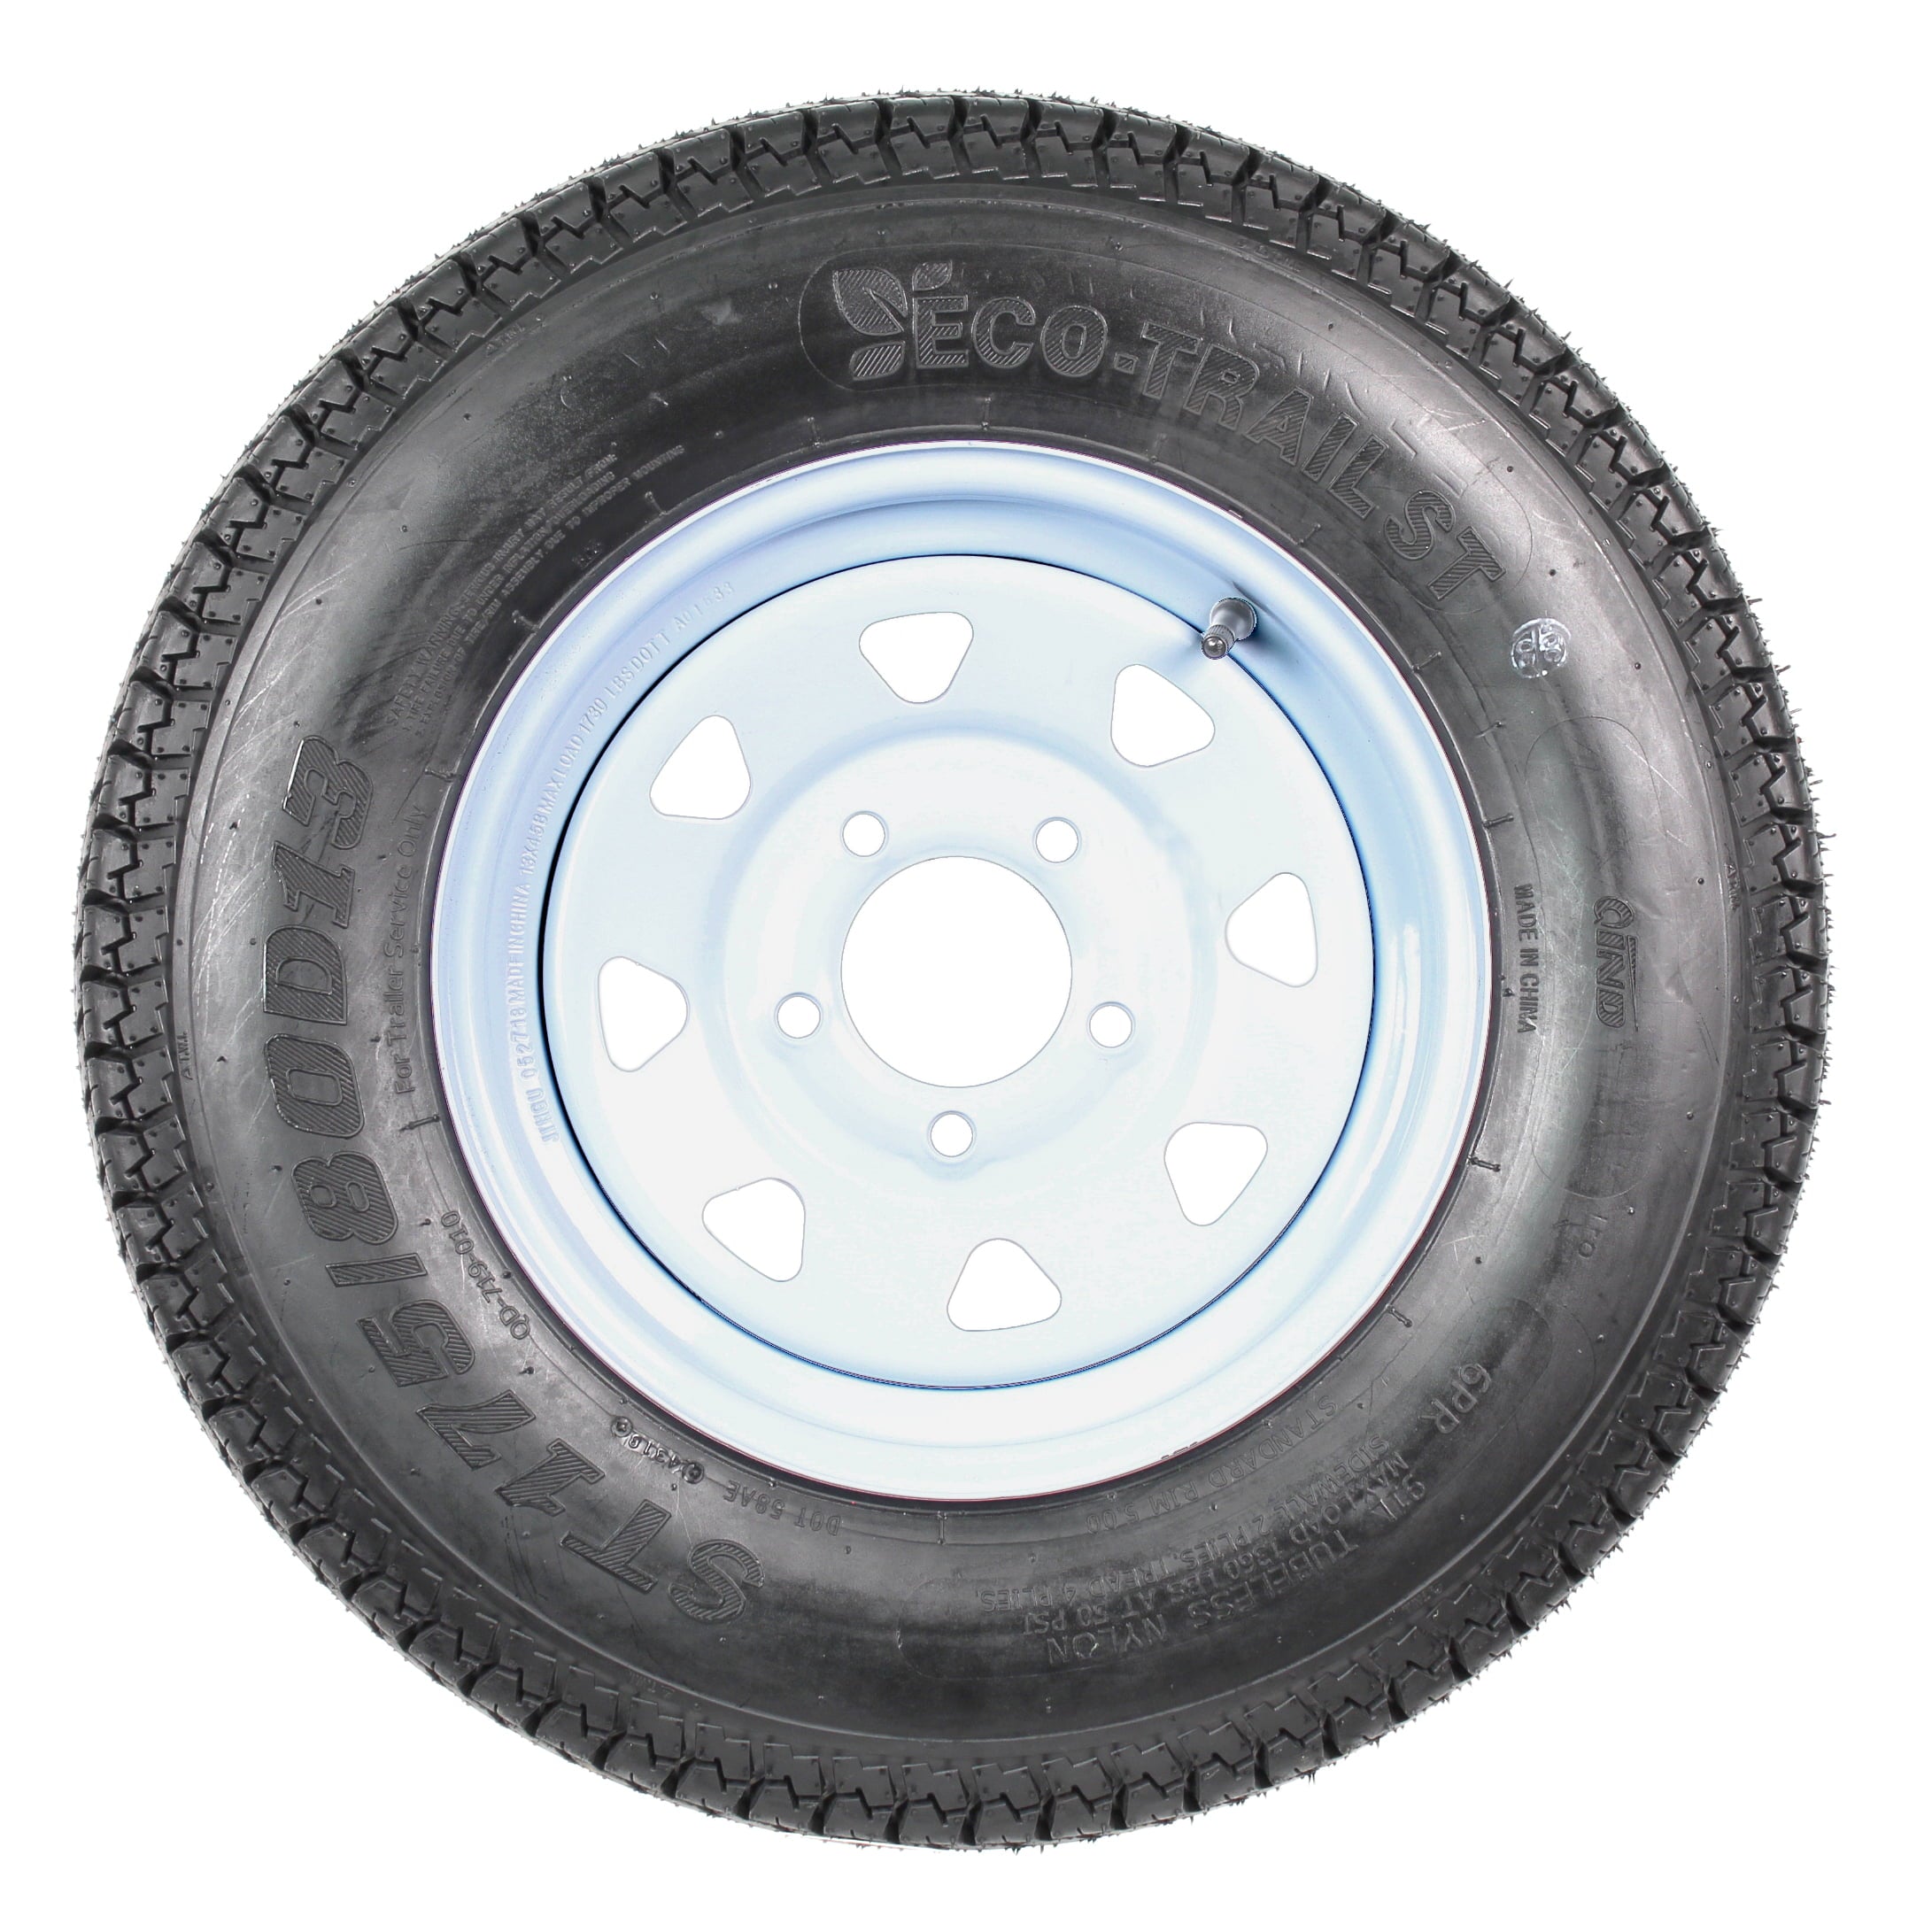 2-Pk Trailer Tires Rims ST175/80D13 175/80 13 B78-13 LRC 5 Lug White Spoke Wheel